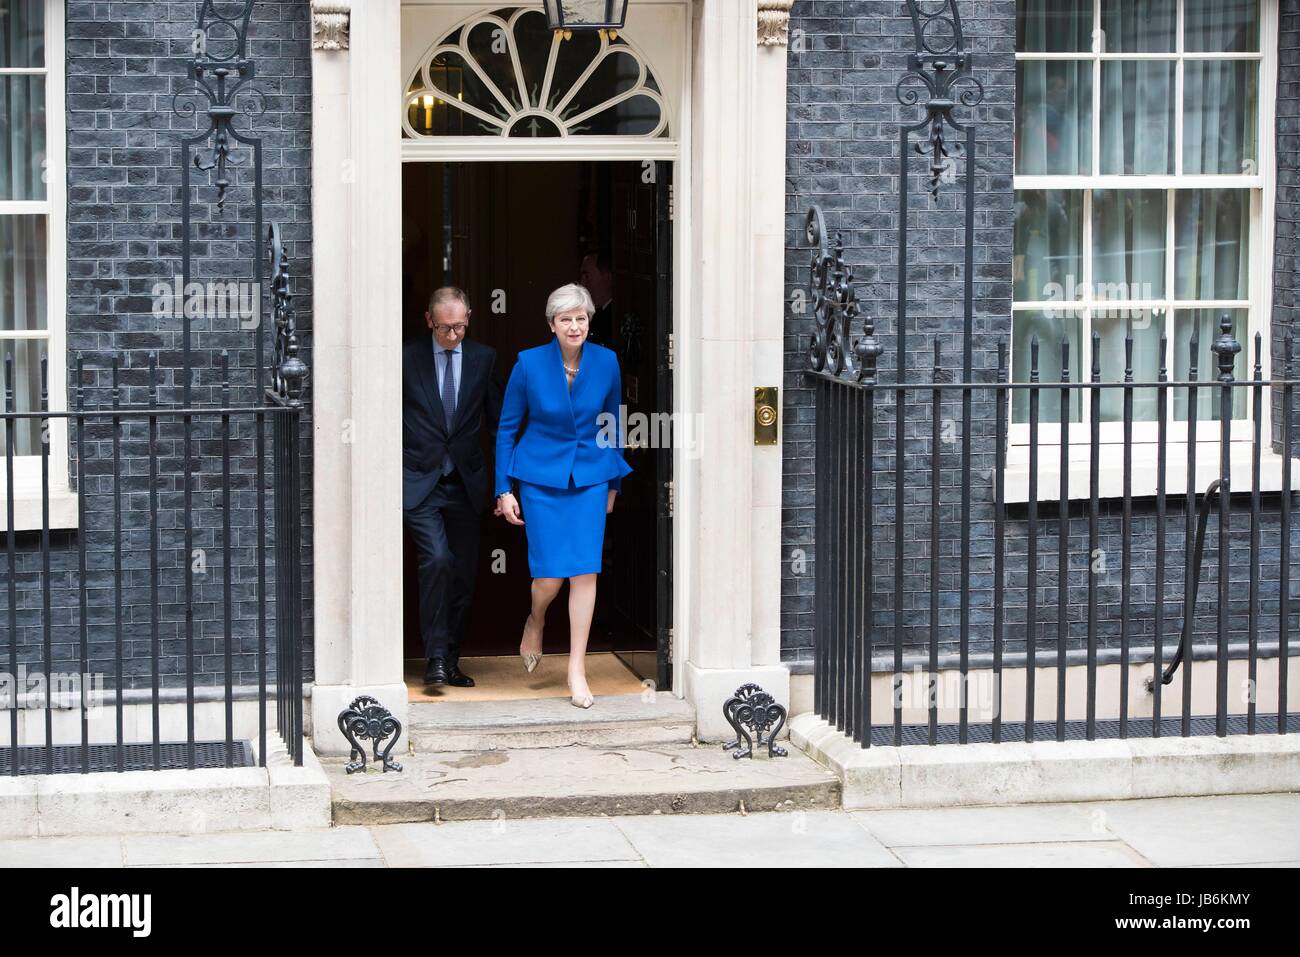 Un parlement ne parvient pas à remporter la majorité. Premier Ministre et chef du parti conservateur, Theresa May et son mari, Philip peut, laisser 10 Downing Street pour visiter la Reine. Londres, Royaume-Uni. 09/06/2017 | Le monde d'utilisation Banque D'Images